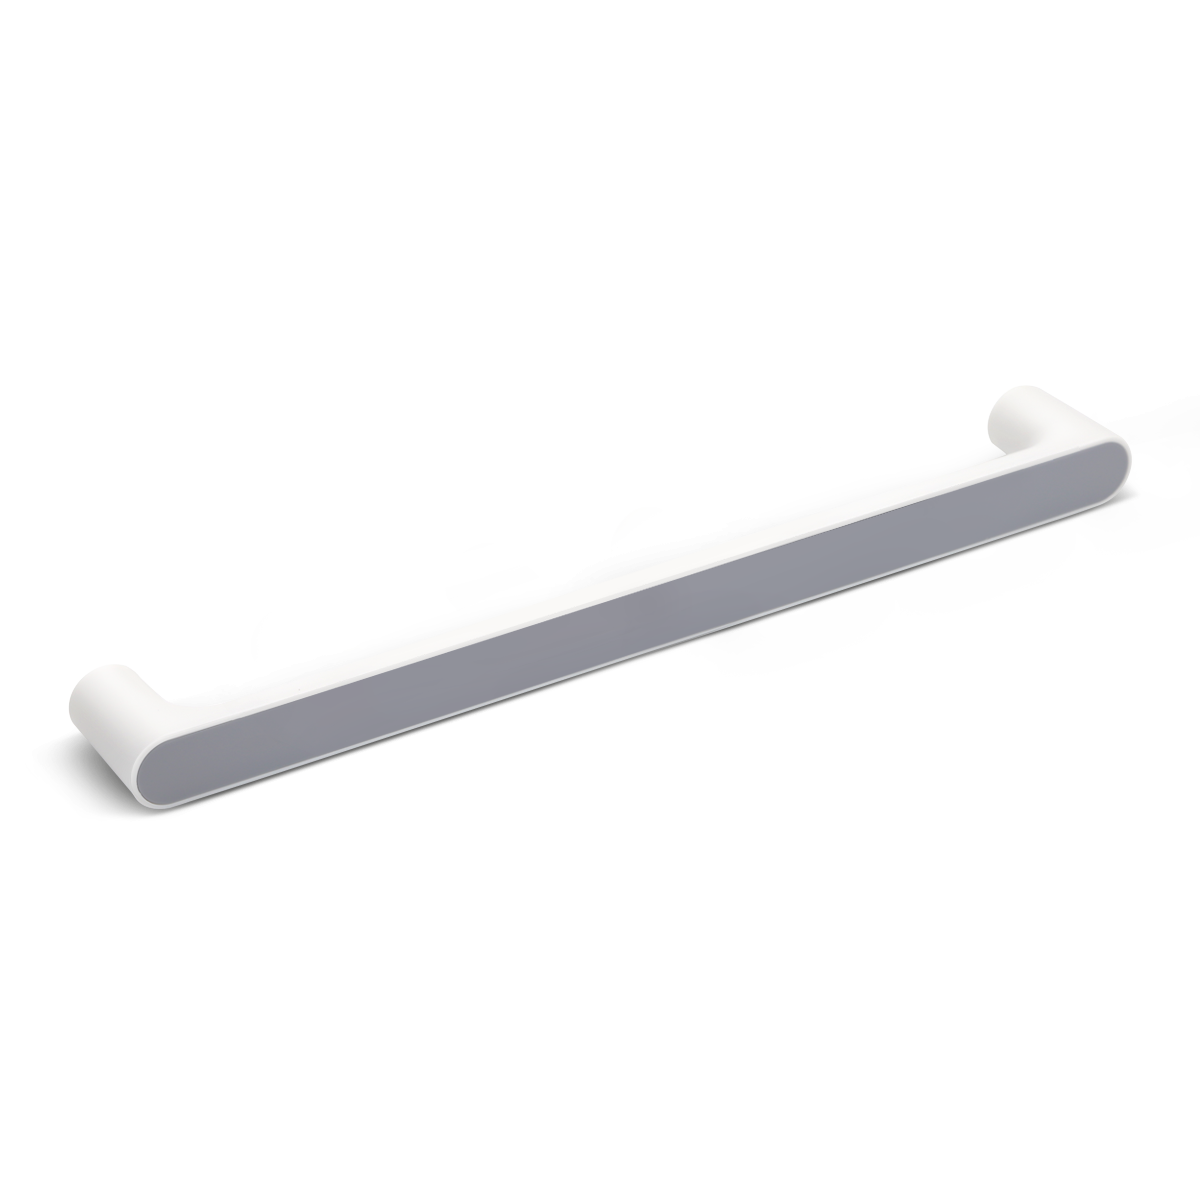 Тримач для рушників MVM 465мм округлий пластиковий сірий BP-30 white/gray